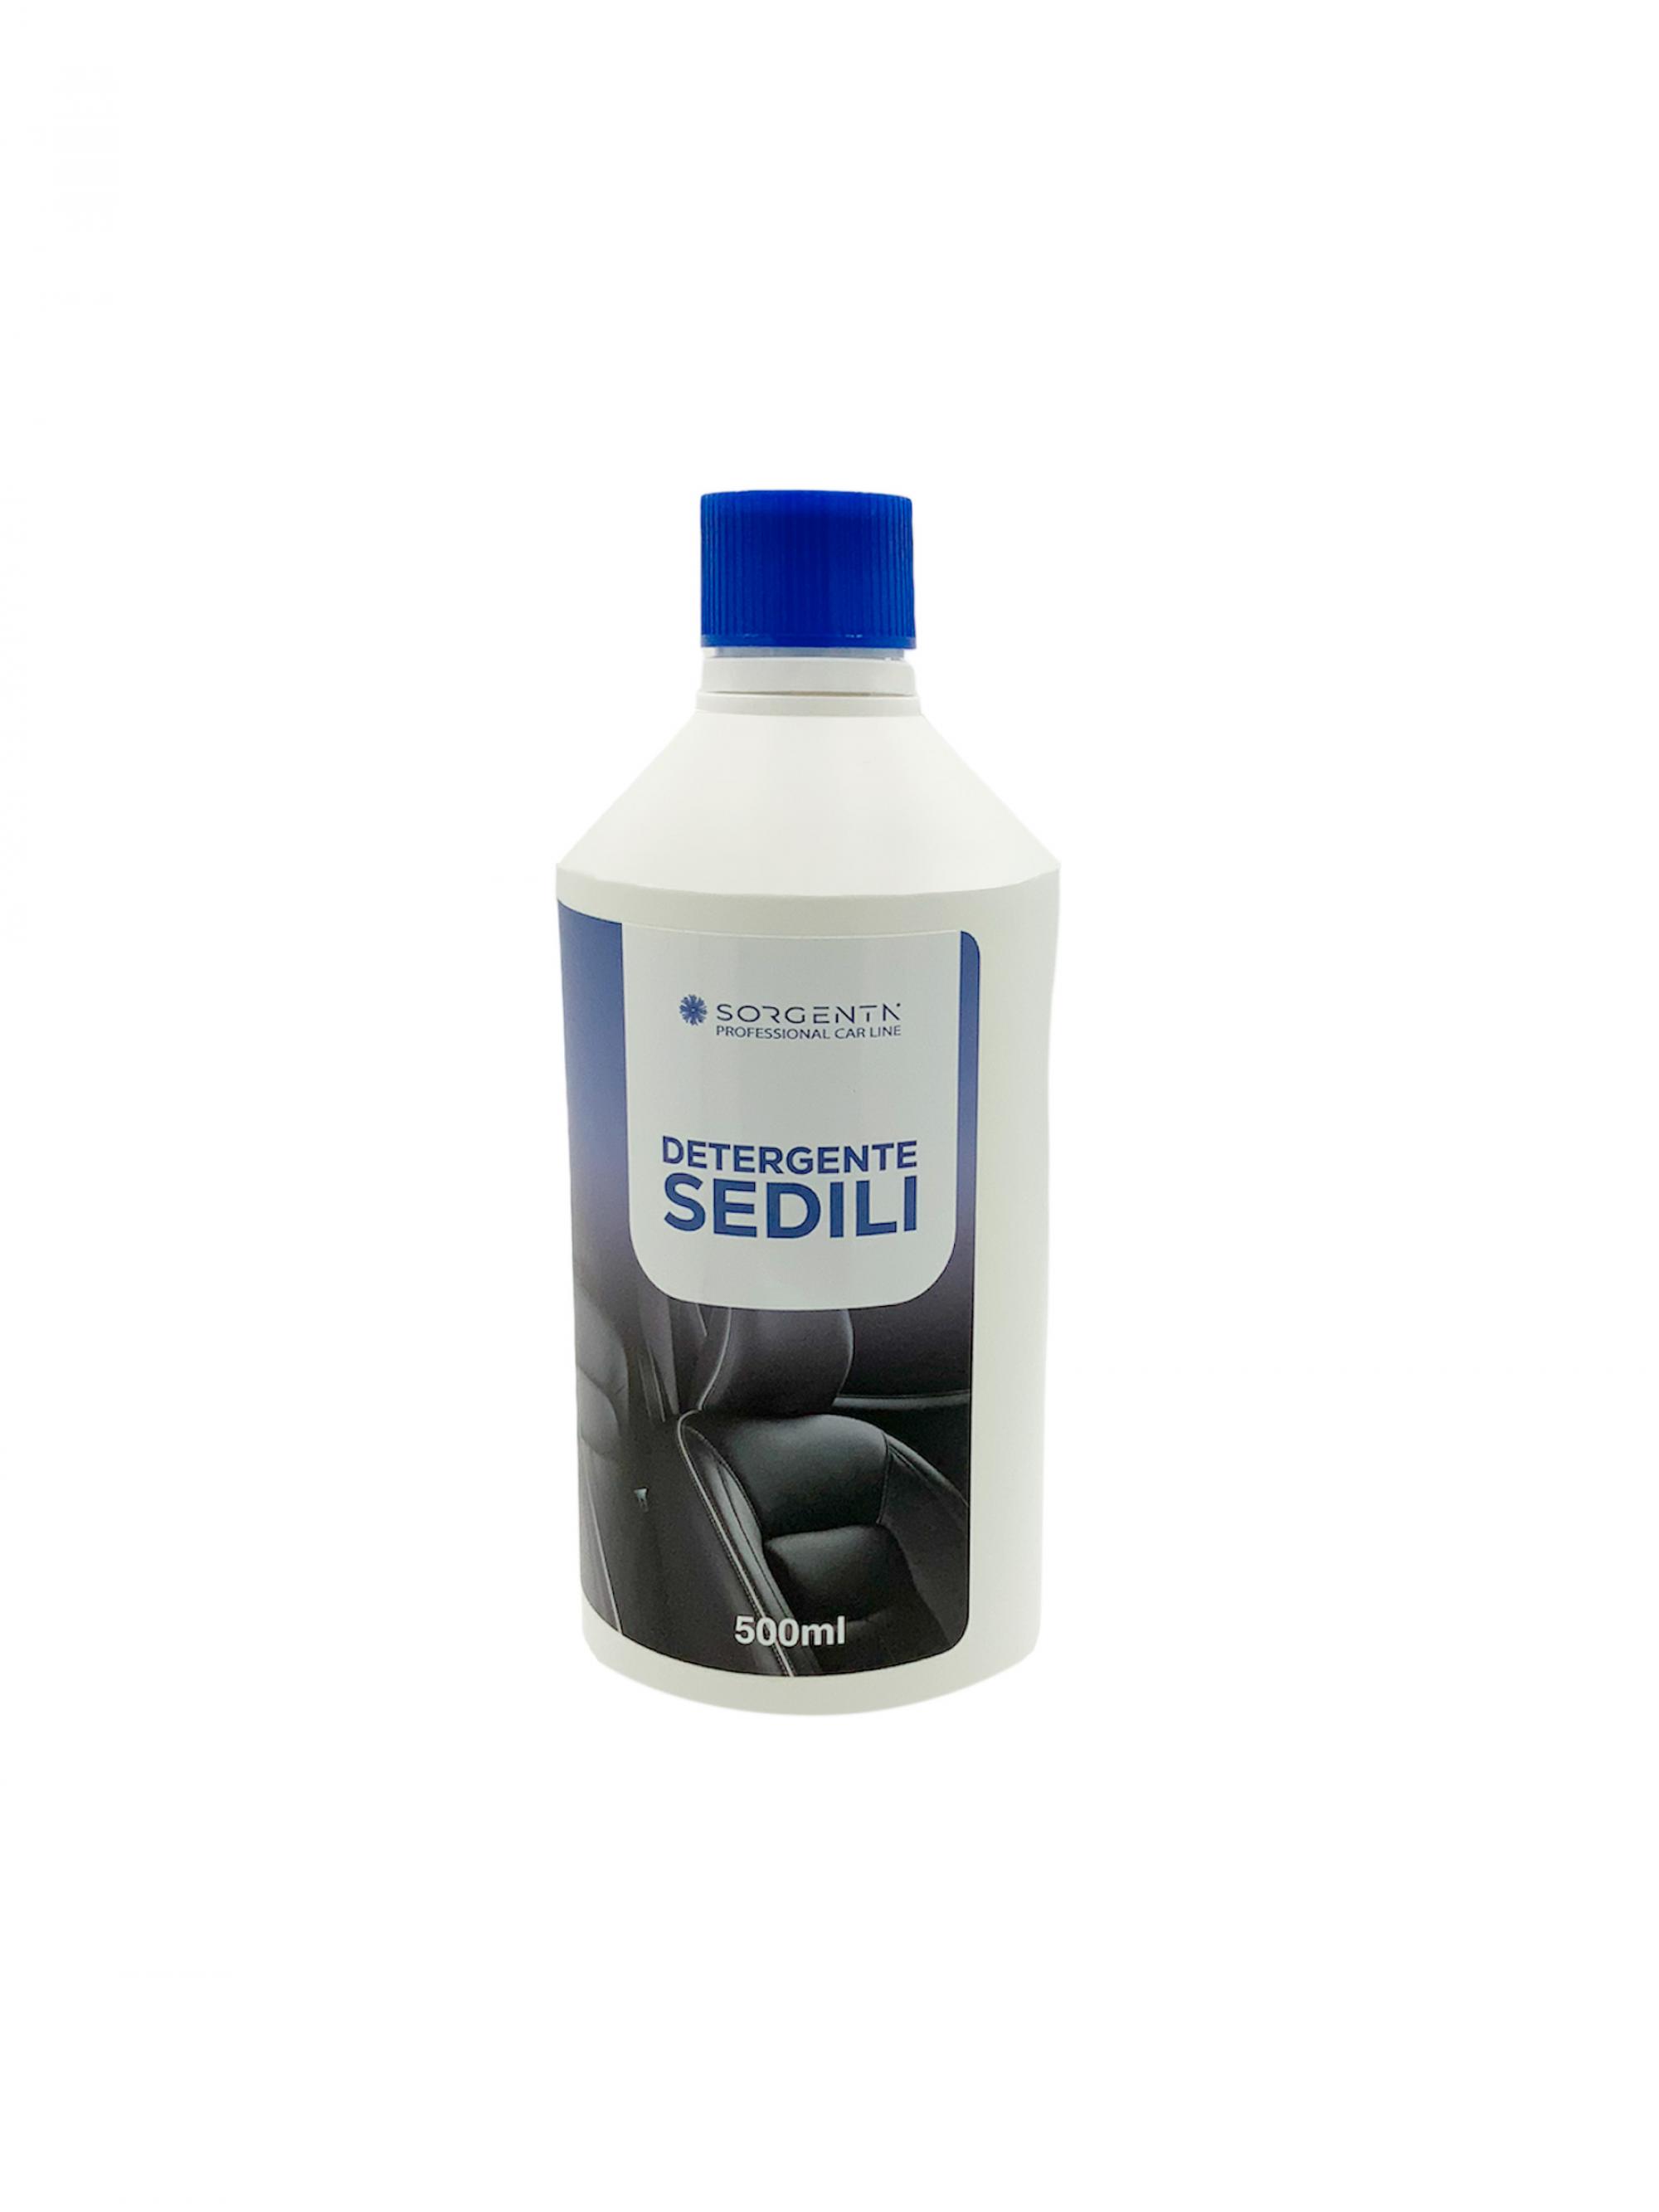 Detergente Sedili Professional Car Line 500ml